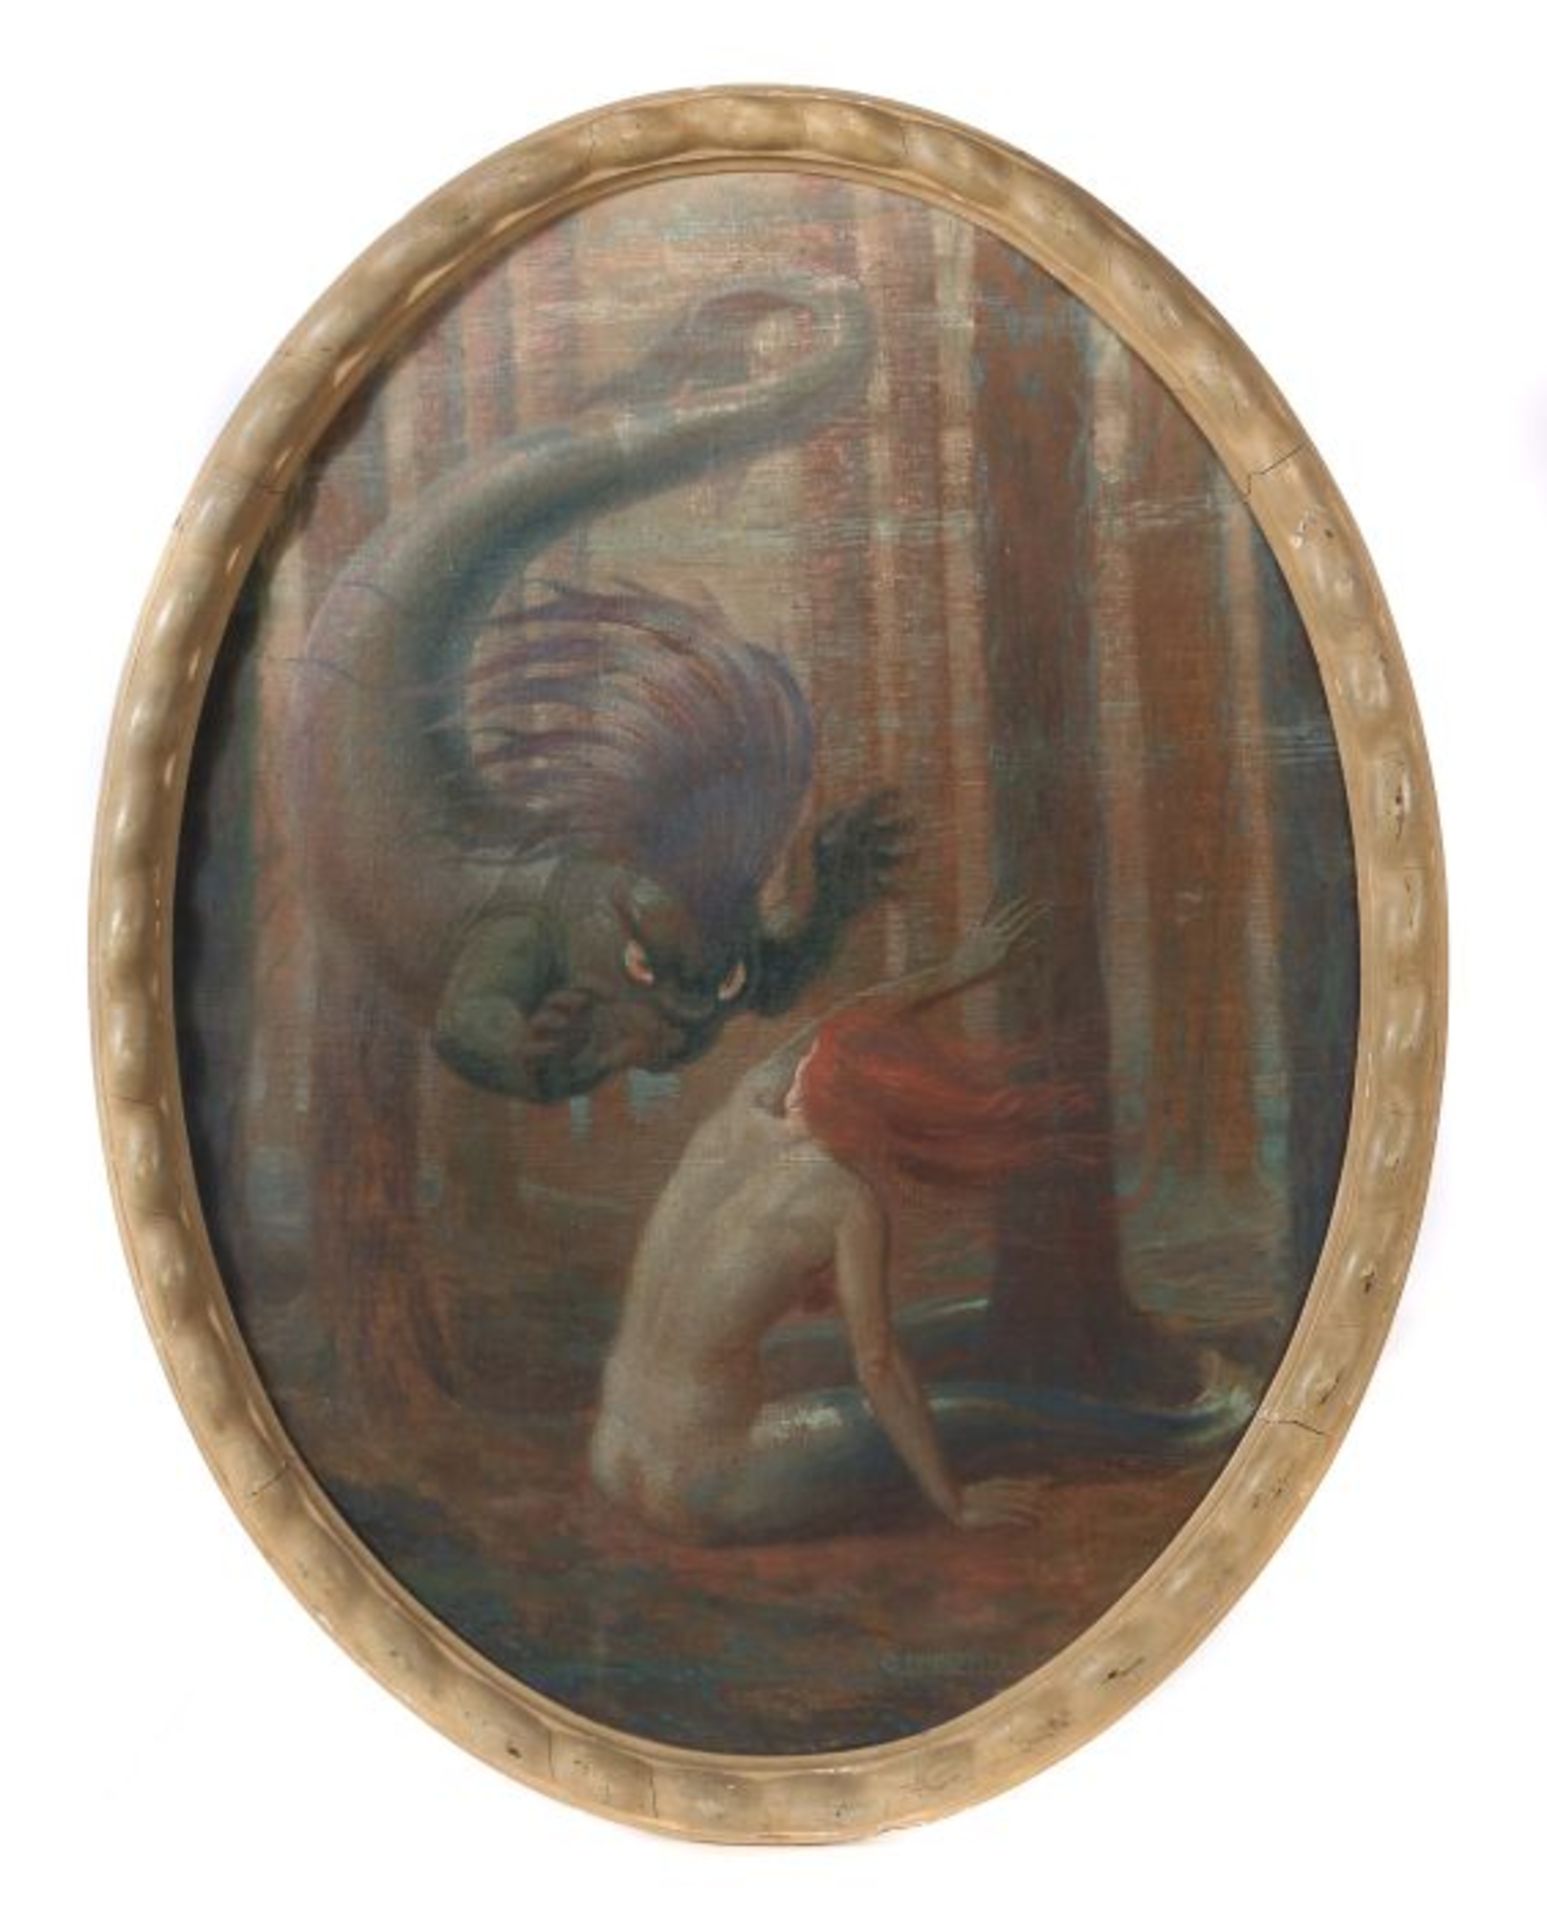 Olbertz, Otto JosefKöln 1881 - 1953 Pfaffenhofen, deutscher Maler und Grafiker. "Meerjungfrau